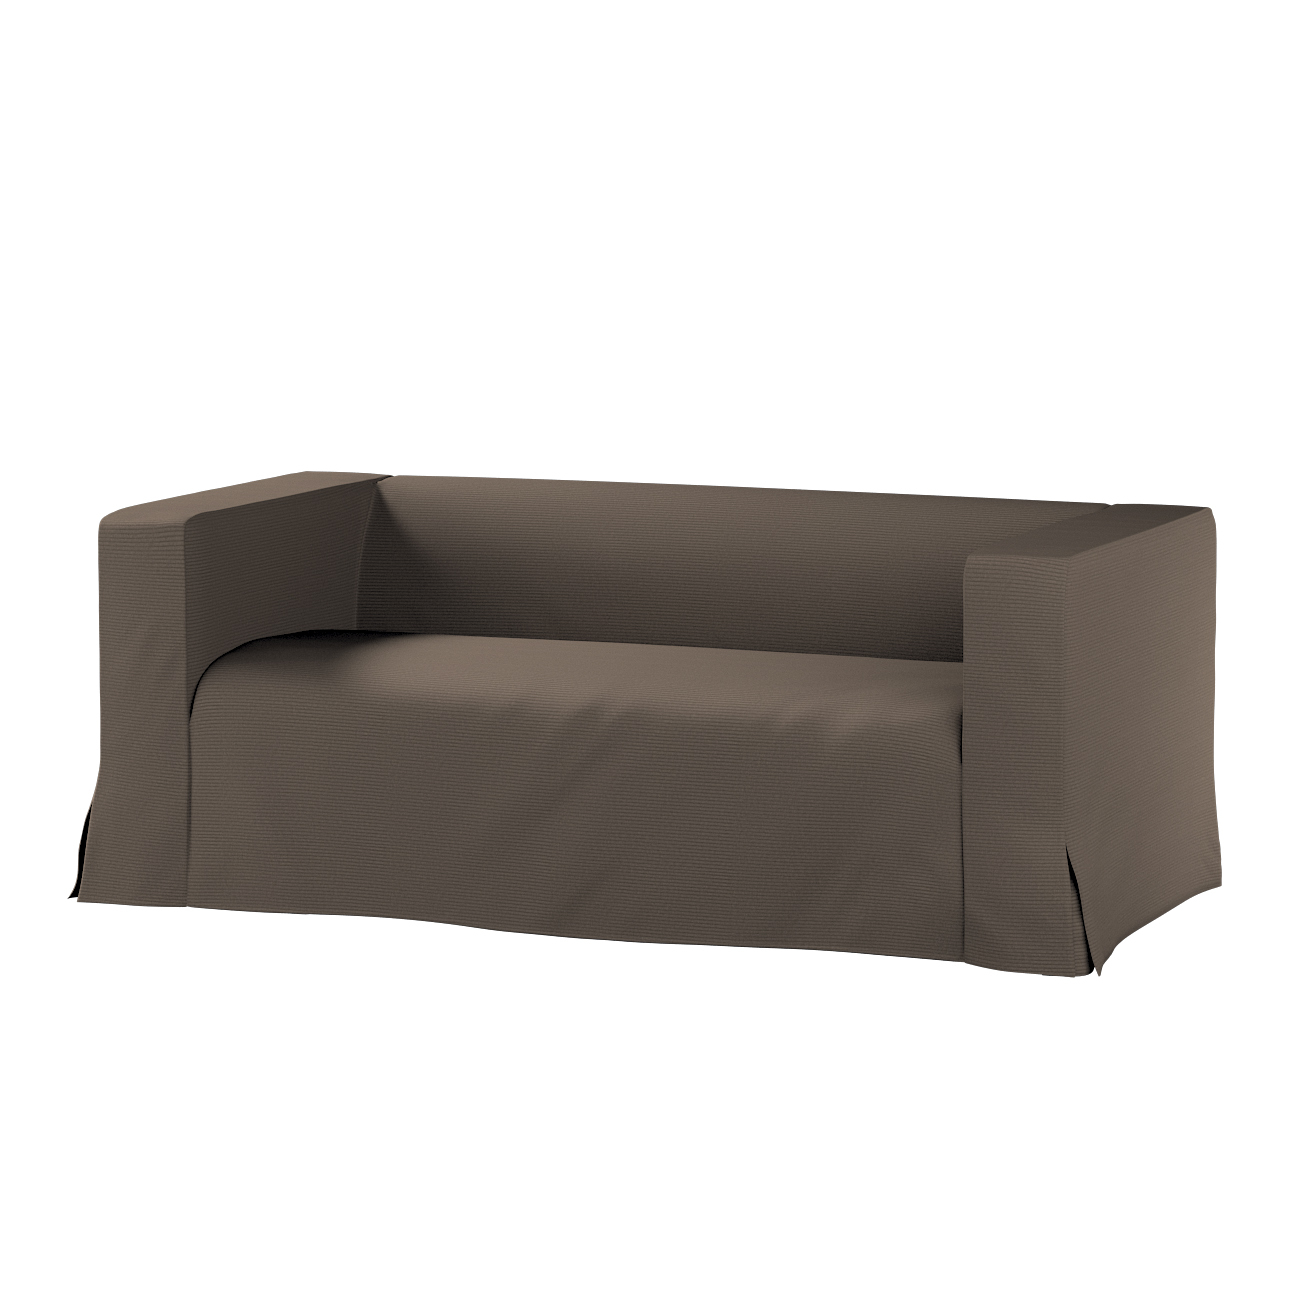 Bezug für Klippan 2-Sitzer Sofa, lang mit Kellerfalte, braun, Klippan 2-er, günstig online kaufen